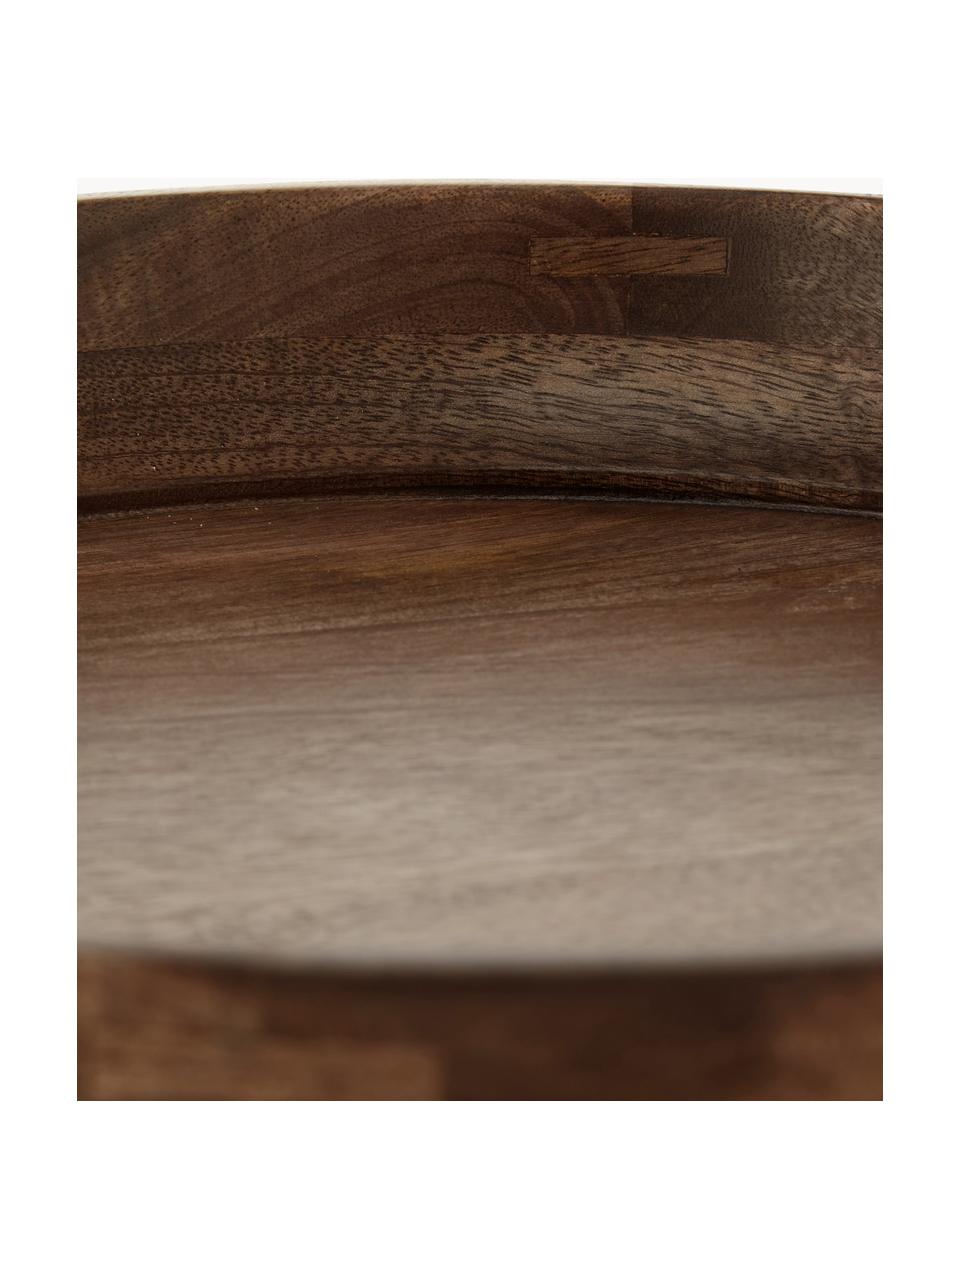 Runder Beistelltisch Bowl aus Mangoholz, Tischplatte: Mangoholz, lackiert, Beine: Stahl, pulverbeschichtet, Mangoholz, dunkel lackiert, Ø 40 x H 38 cm